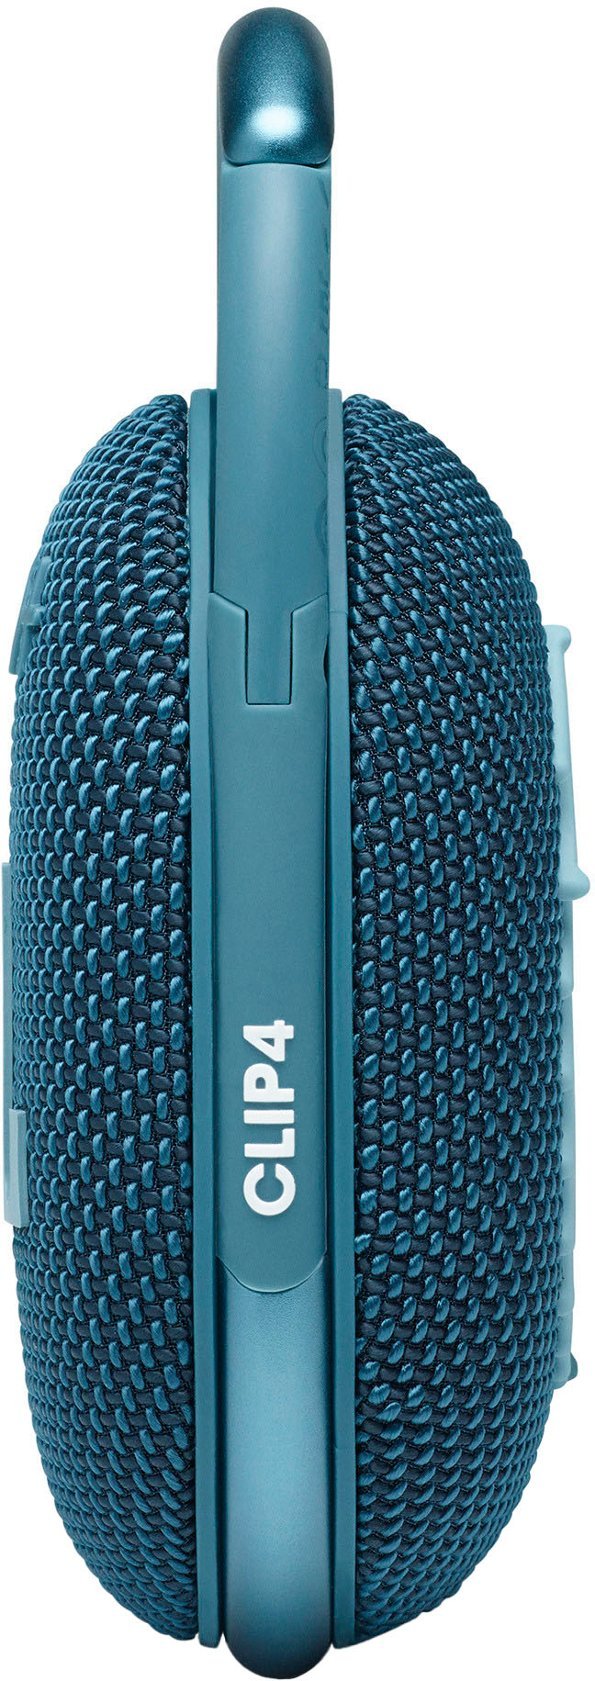 /// JBL | Clip 4 Waterproof Bluetooth Wireless Speaker - Blue | JBLCLIP4BLUAM